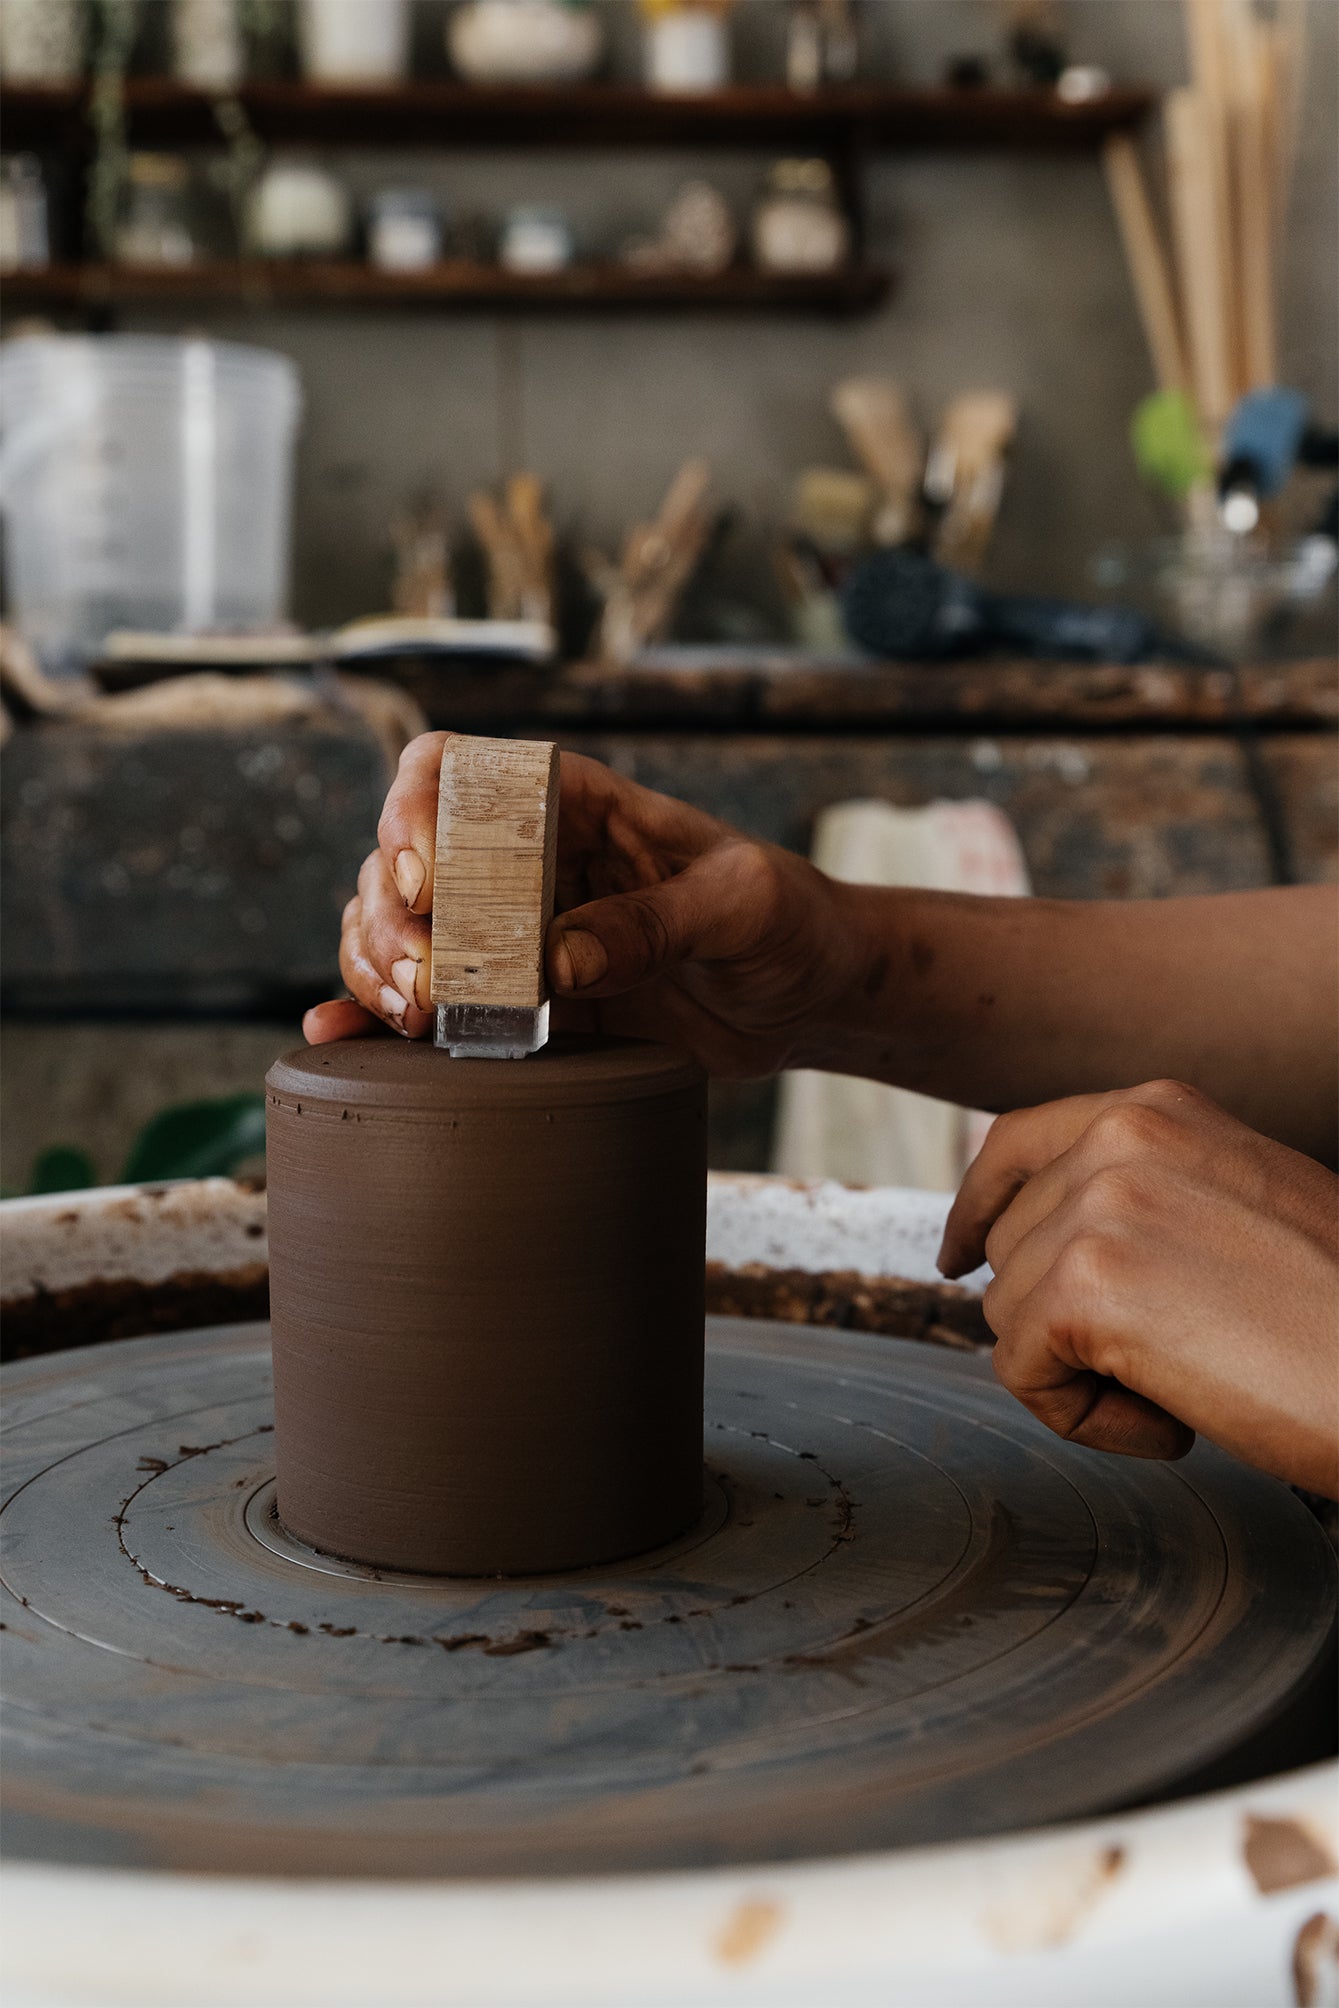 CORSO DI TORNIO - Singole lezioni pratiche di tornio – VS ceramics